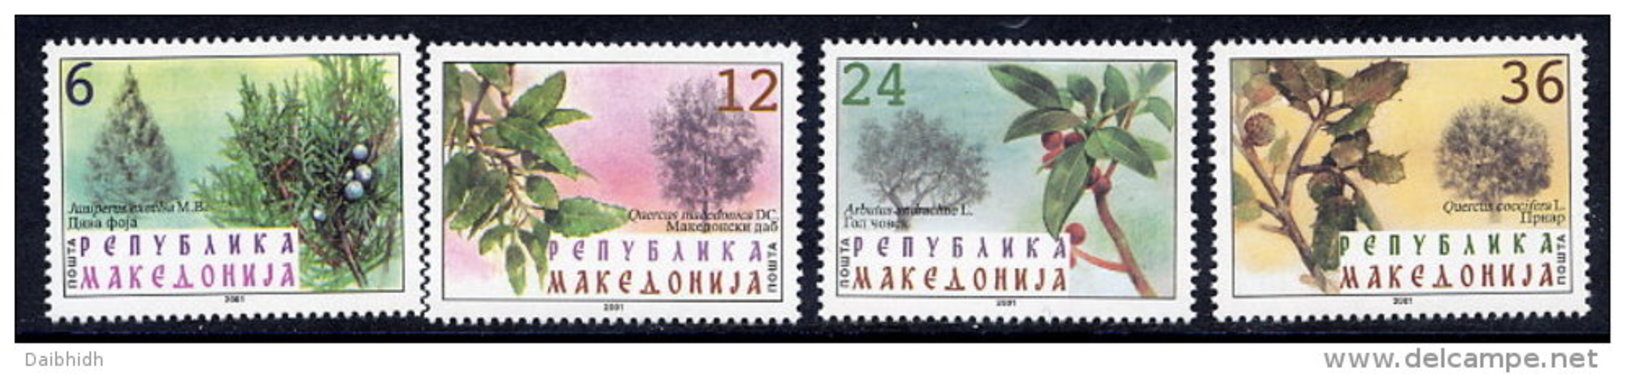 MACEDONIA  2001 Native Trees MNH / **.  Michel 234-37 - Macedonia Del Nord